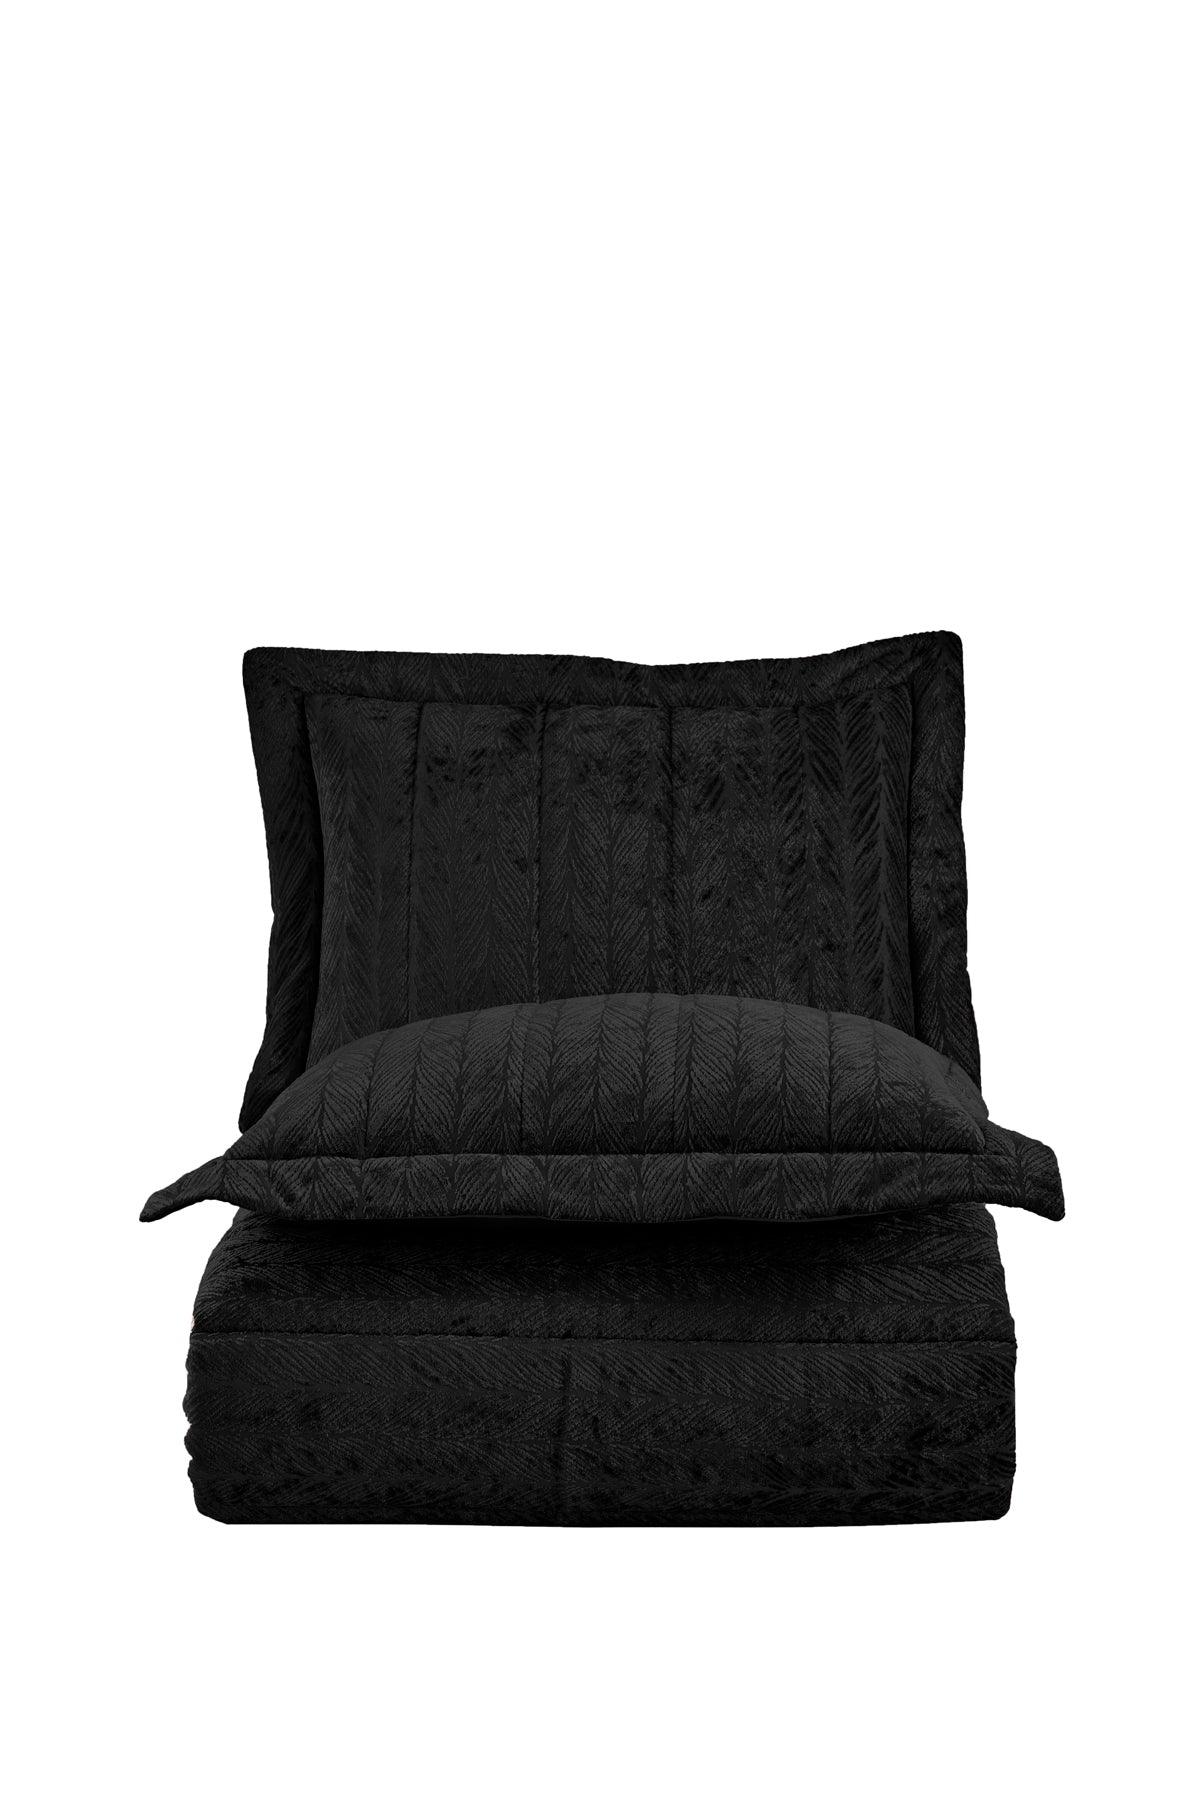 Comfort yeni nesil uykuseti - 3 parça Velvet Antrasit (230x220cm) - Elart Home